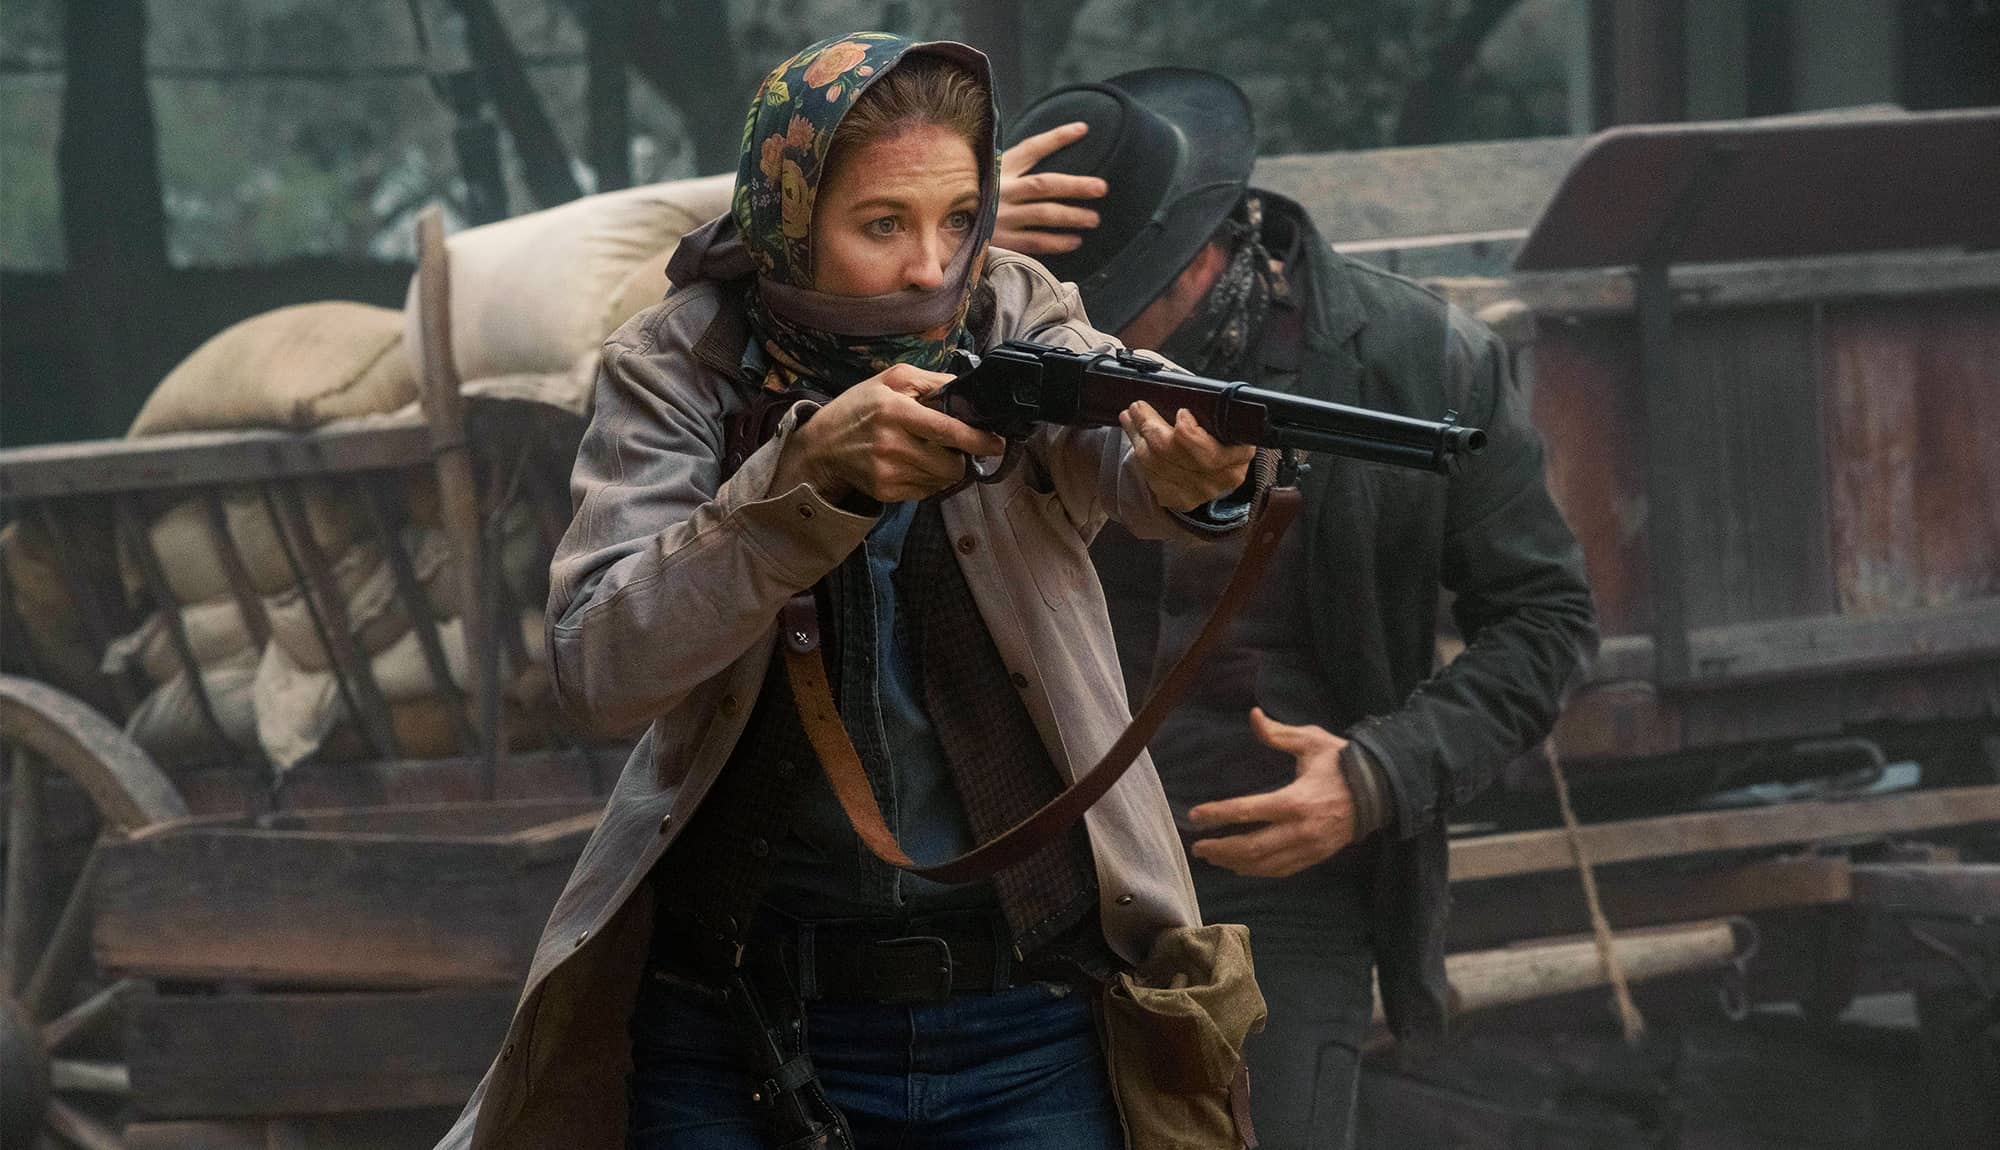 Fear the Walking Dead Goes Full Western In Episode 503 Trailer